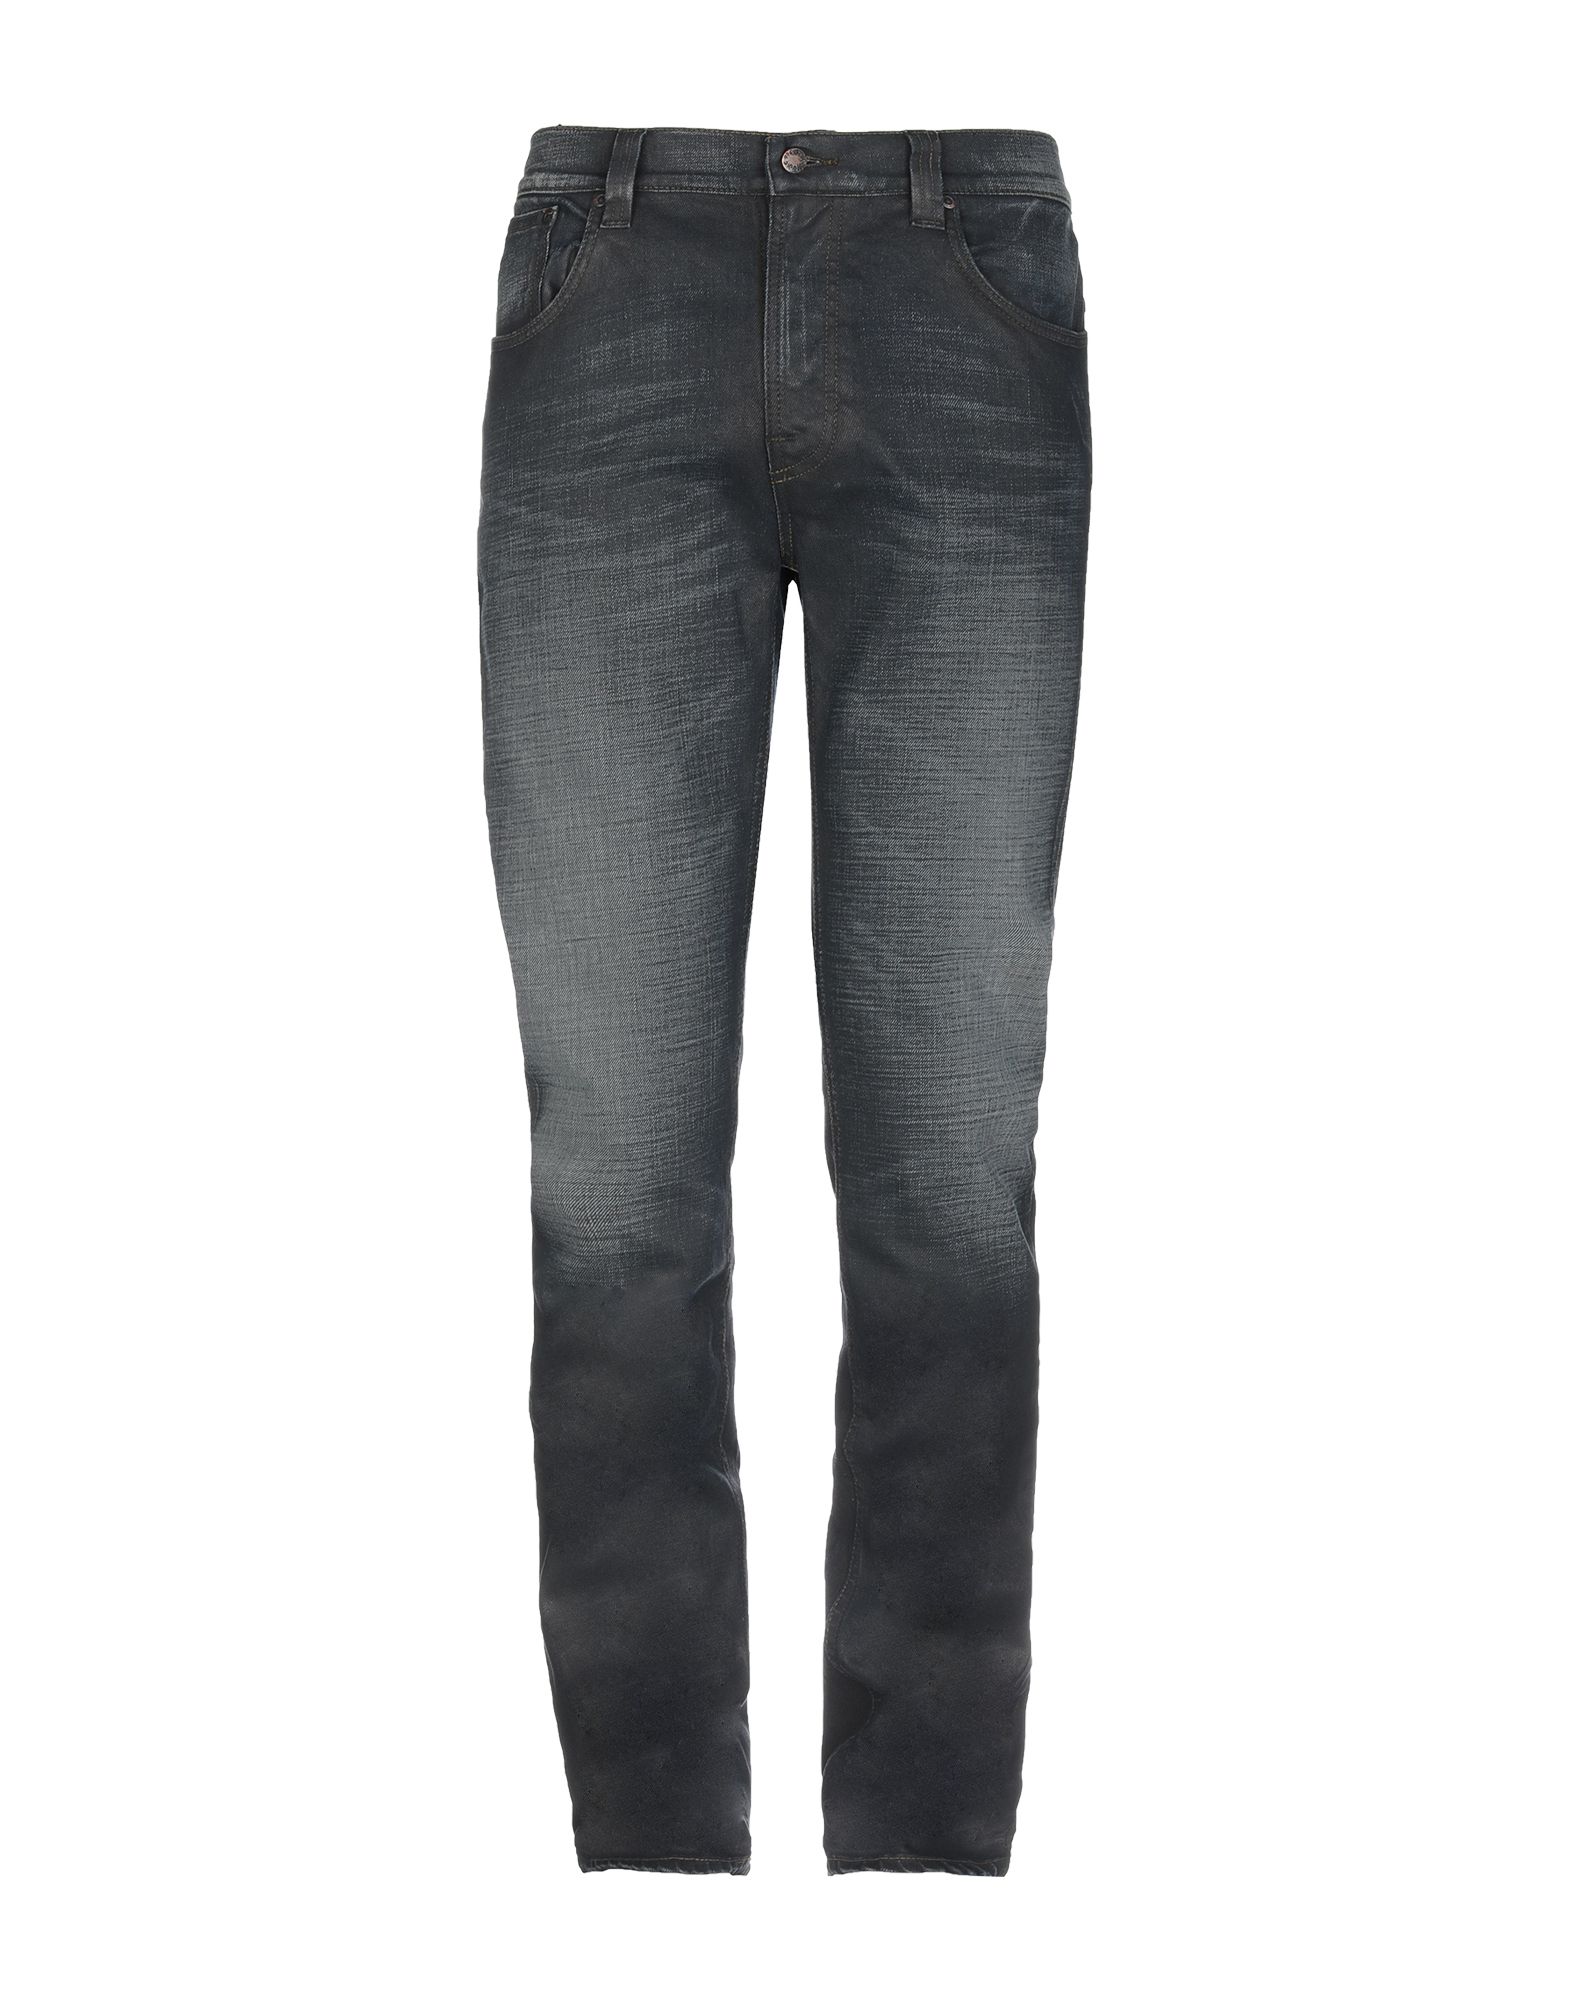 ヌーディージーンズ(Nudie Jeans) メンズジーンズ | 通販・人気ランキング - 価格.com